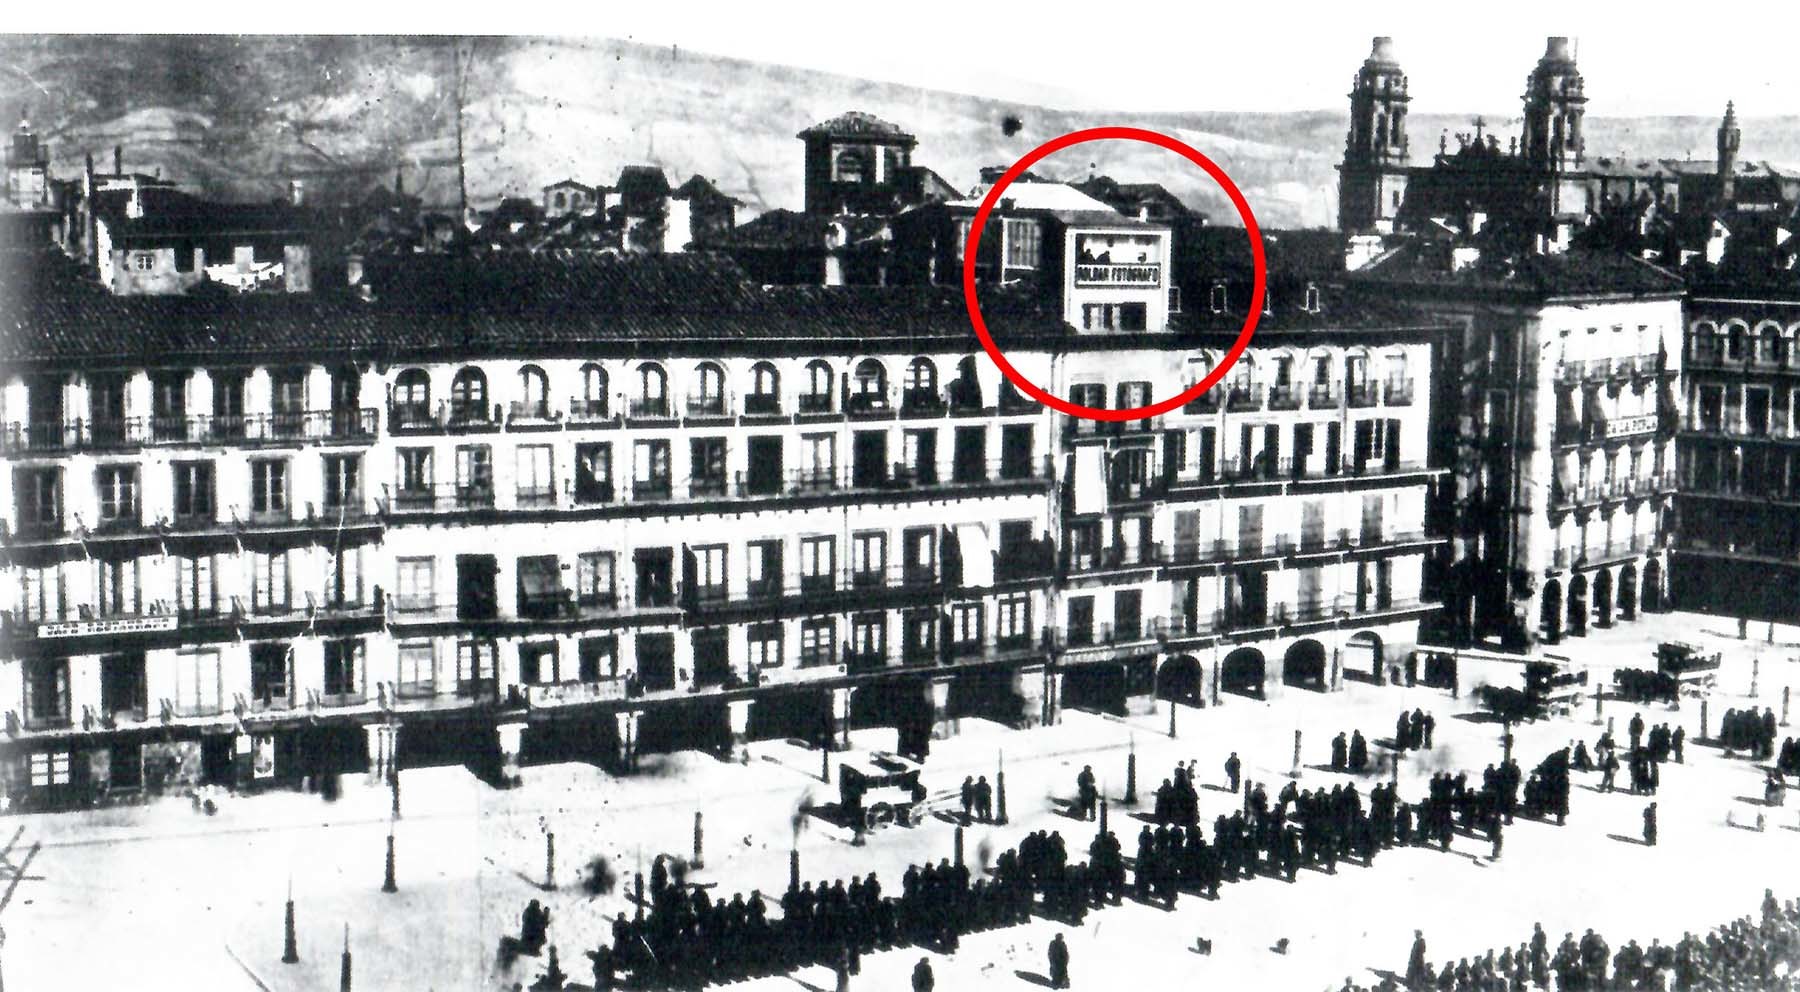 Fotografía tomada en 1882 durante una parada militar en la plaza de la Constitución, en la que distinguimos en el alto del edificio el cartel “ROLDÁN FOTÓGRAFO” y dos personas asomadas al balcón (Foto Zaragüeta)